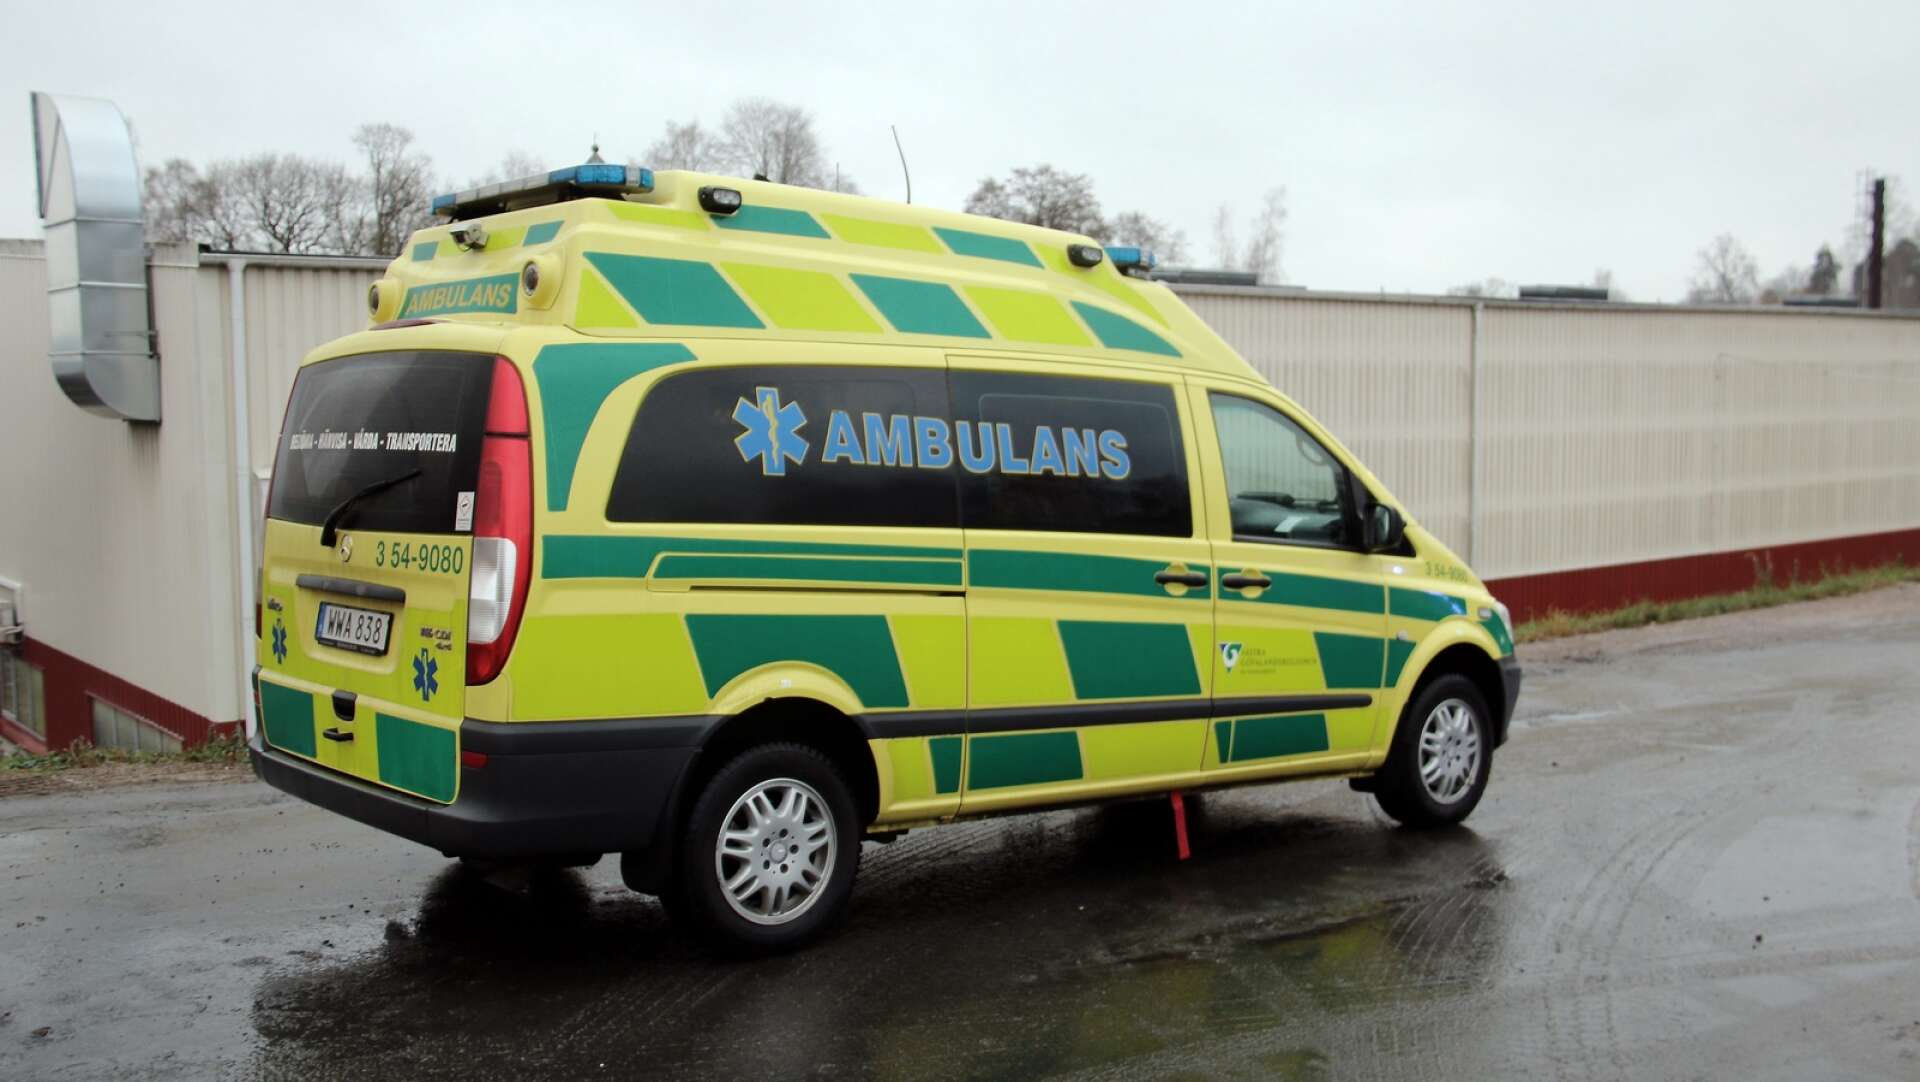 Ambulansfrågan gällande Dalslands sjukhus kunde bemötas med fakta av Nore Johansson och Christer Andreasson (-) anser insändarskribenten. 